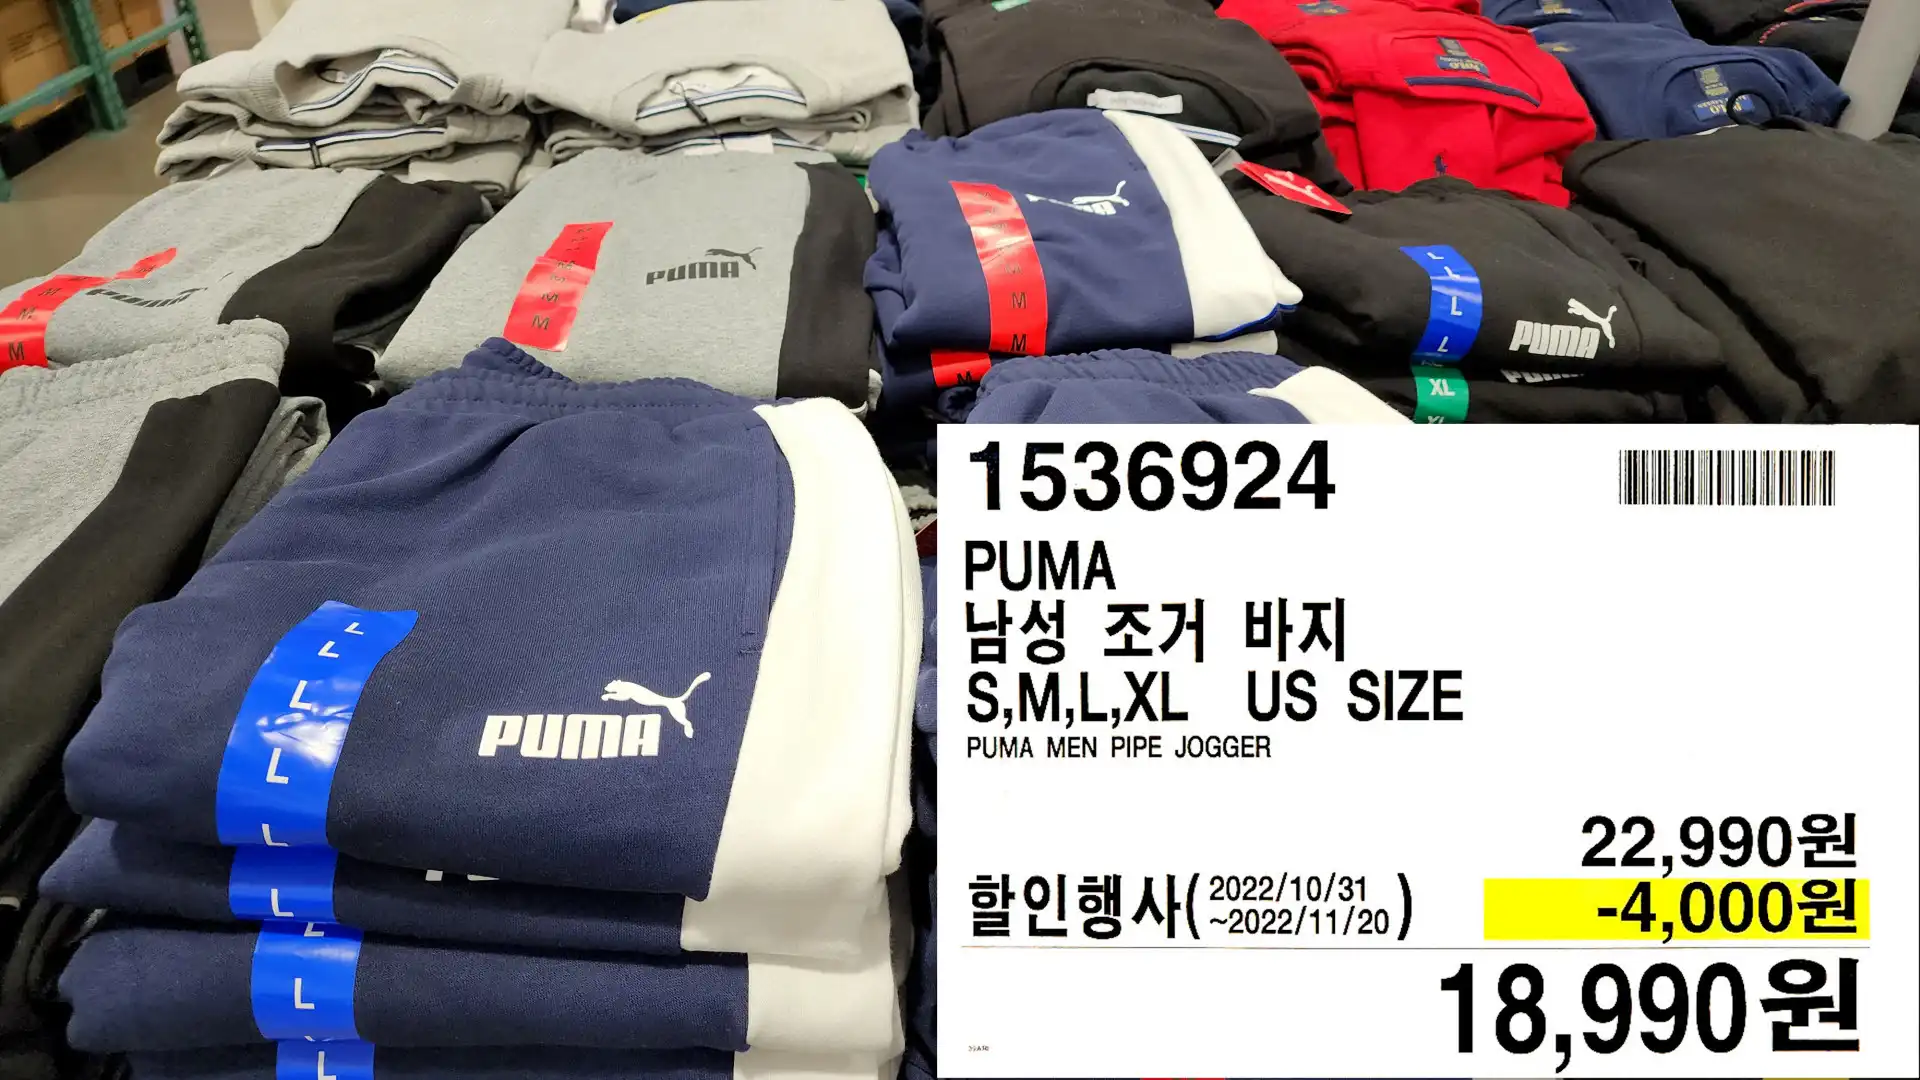 PUMA
남성 후드 티셔츠
S,M,L,XL US SIZE
PUMA MEN PIPE HOODIE
17,990원